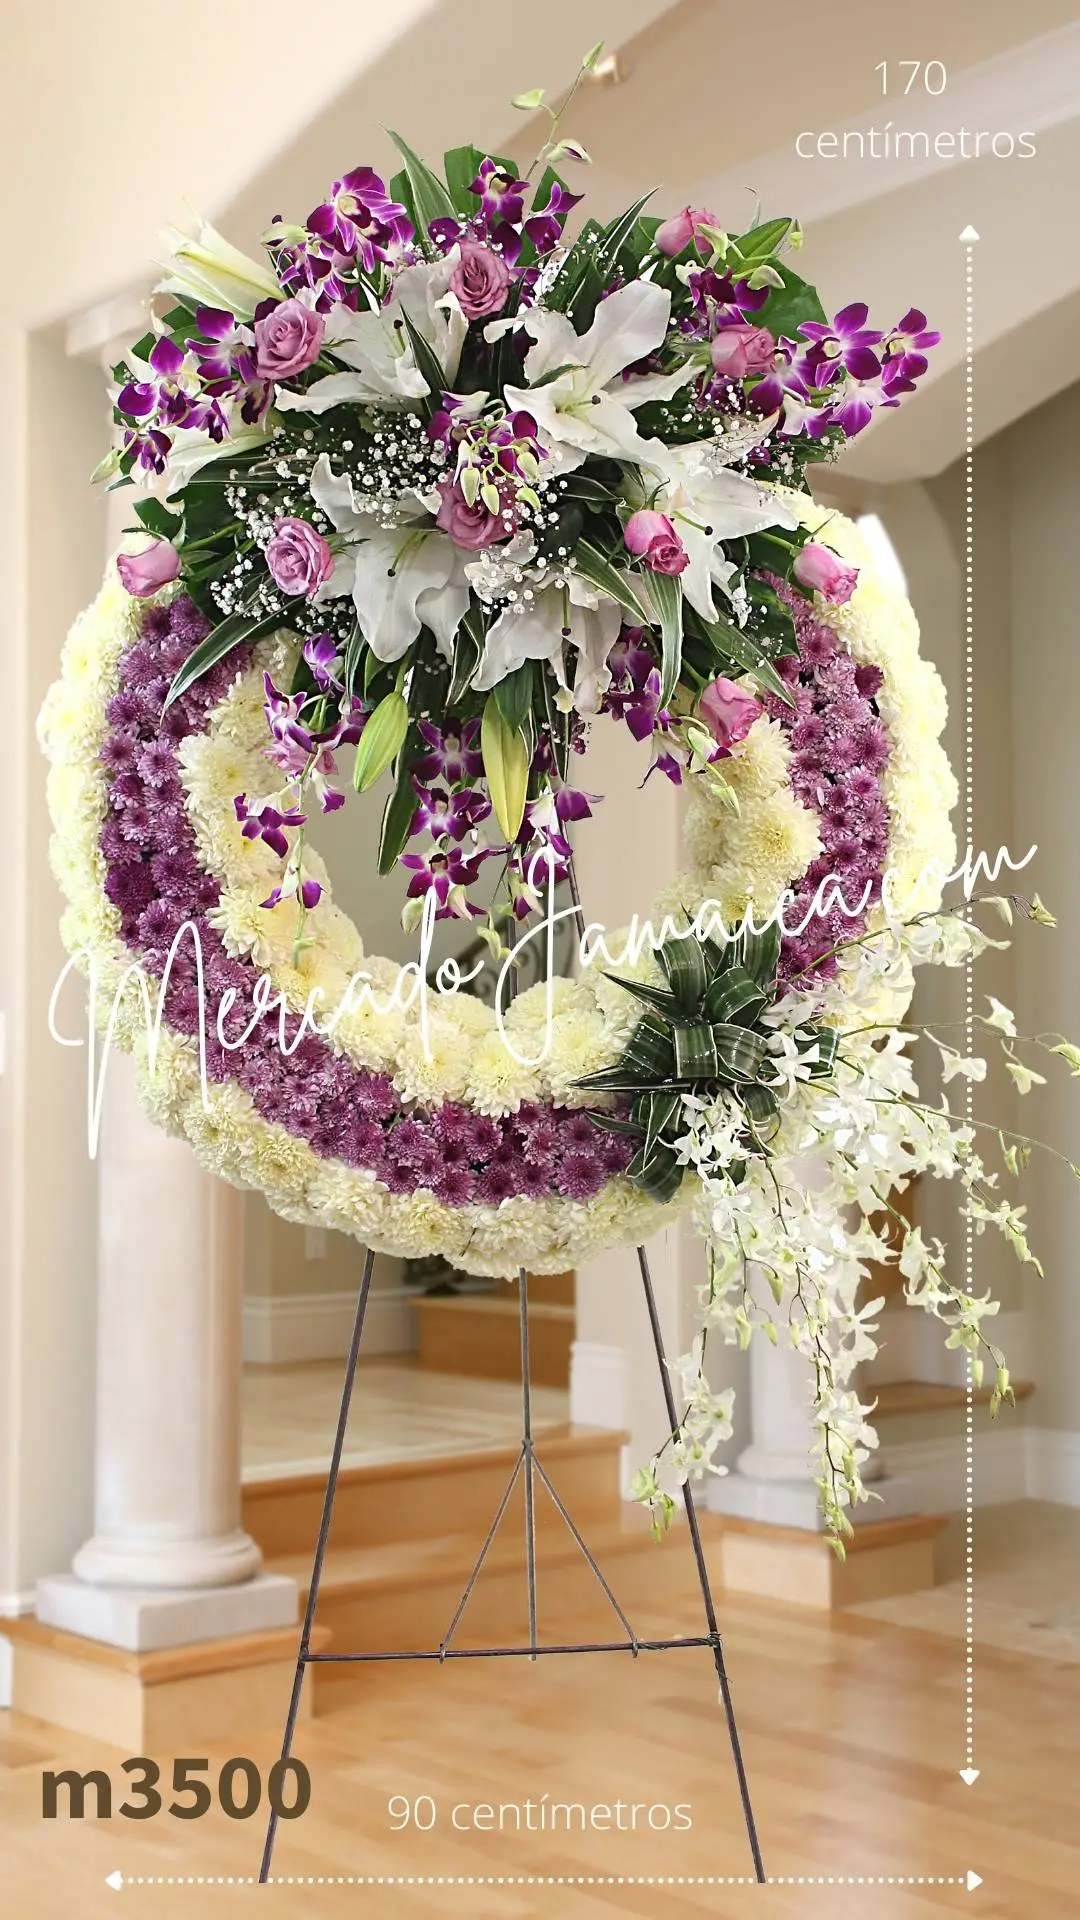 Corona Fúnebre Orquídeas Lila y Blancas: Un Homenaje Floral Exquisito